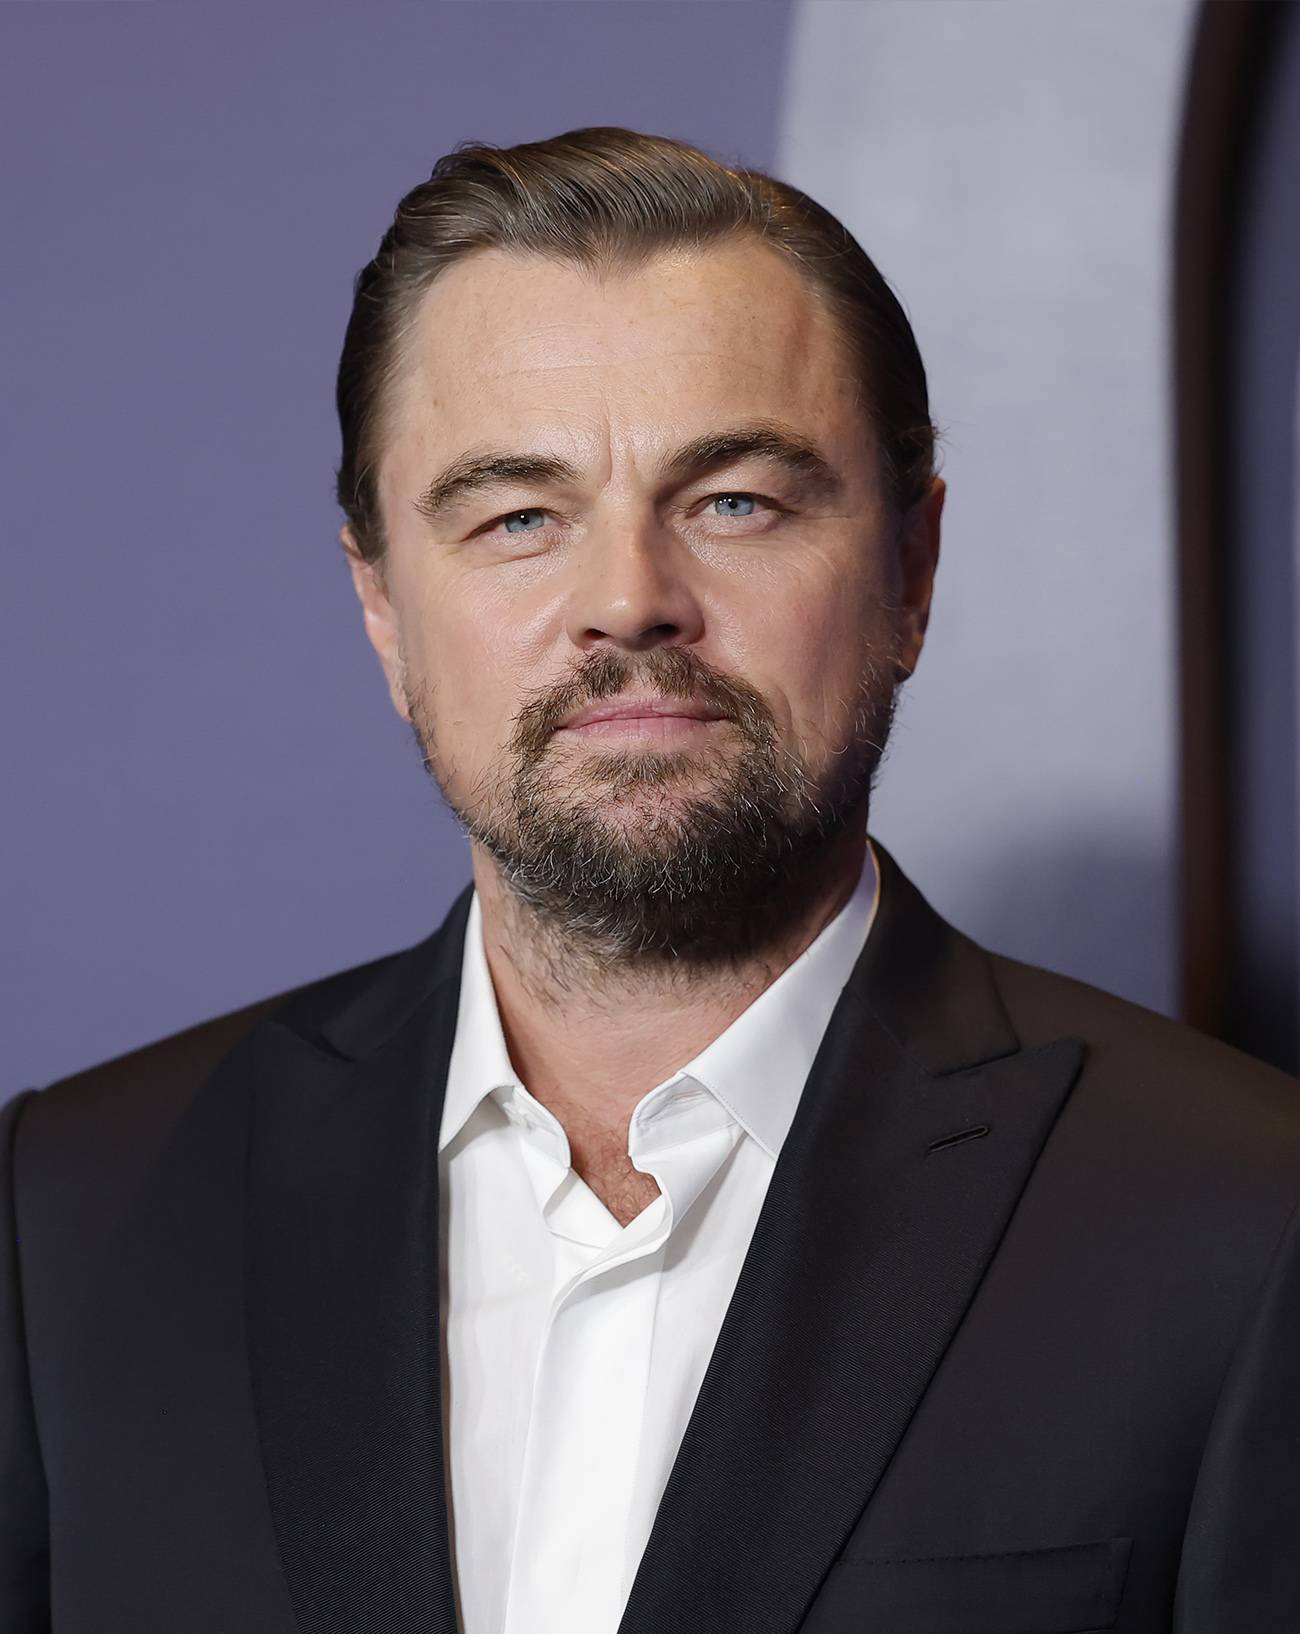 Leonardo DiCaprio, Martin Scorsese, Biopic, Frank Sinatra, Jennifer Lawrence